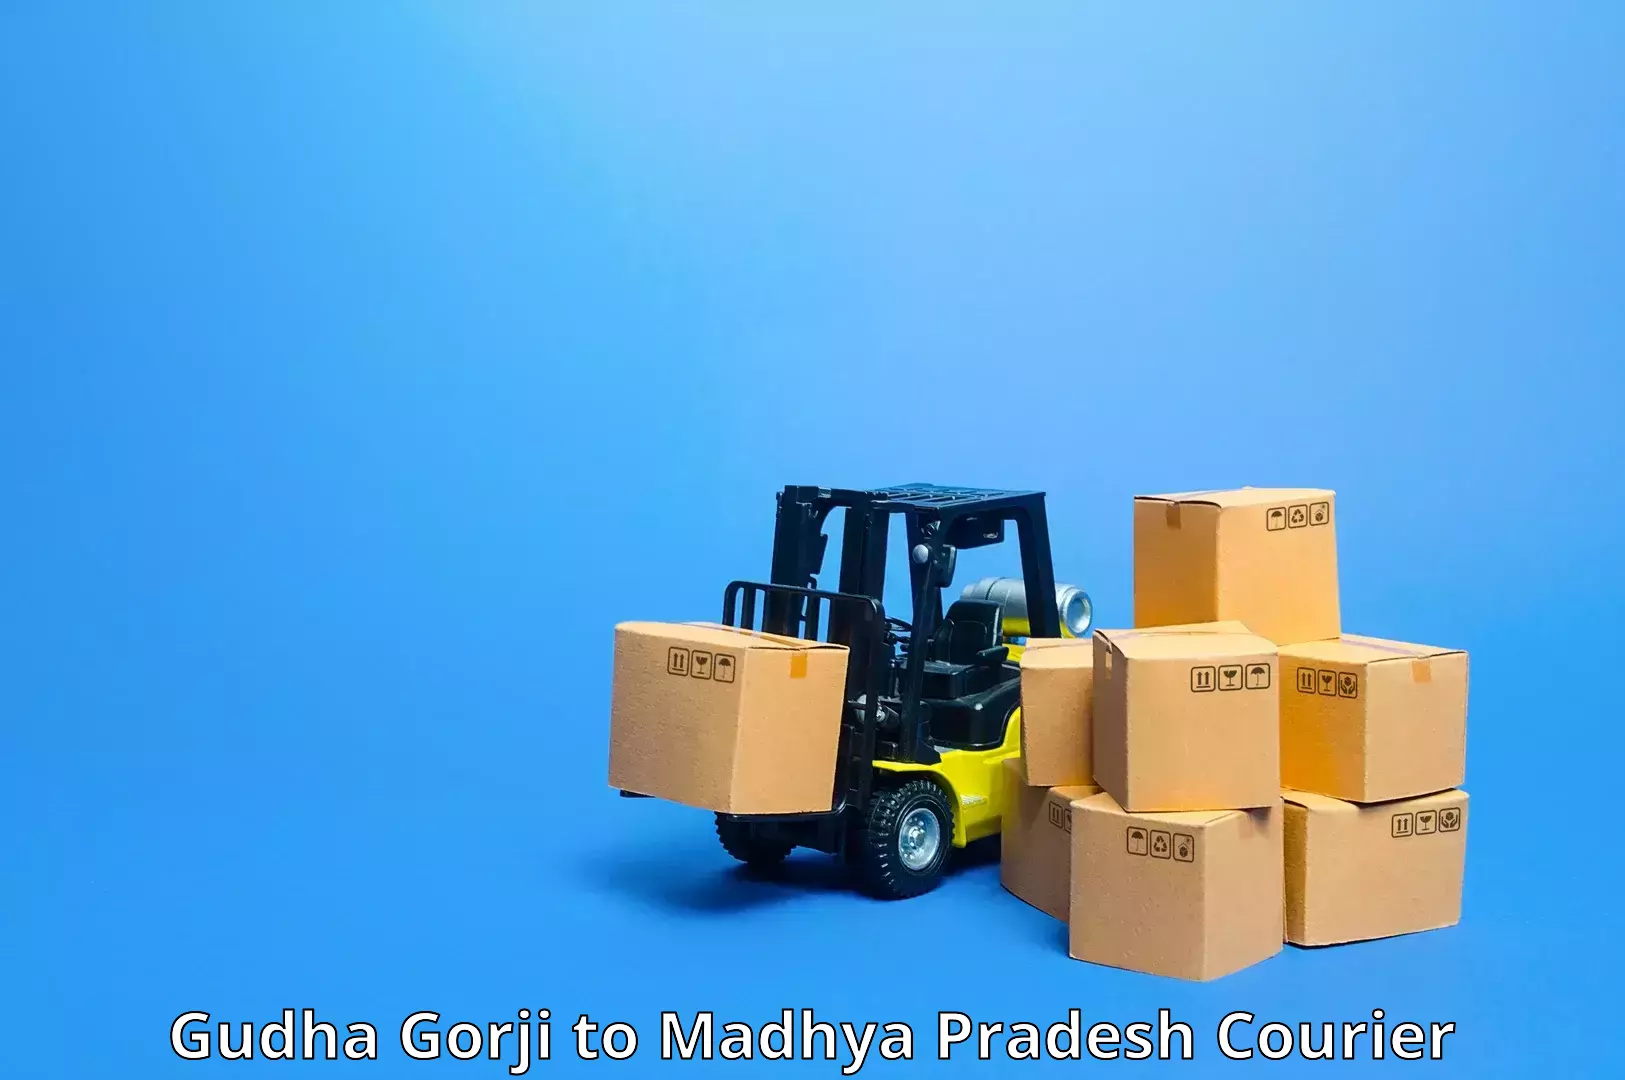 Premium courier solutions in Gudha Gorji to Shahgarh